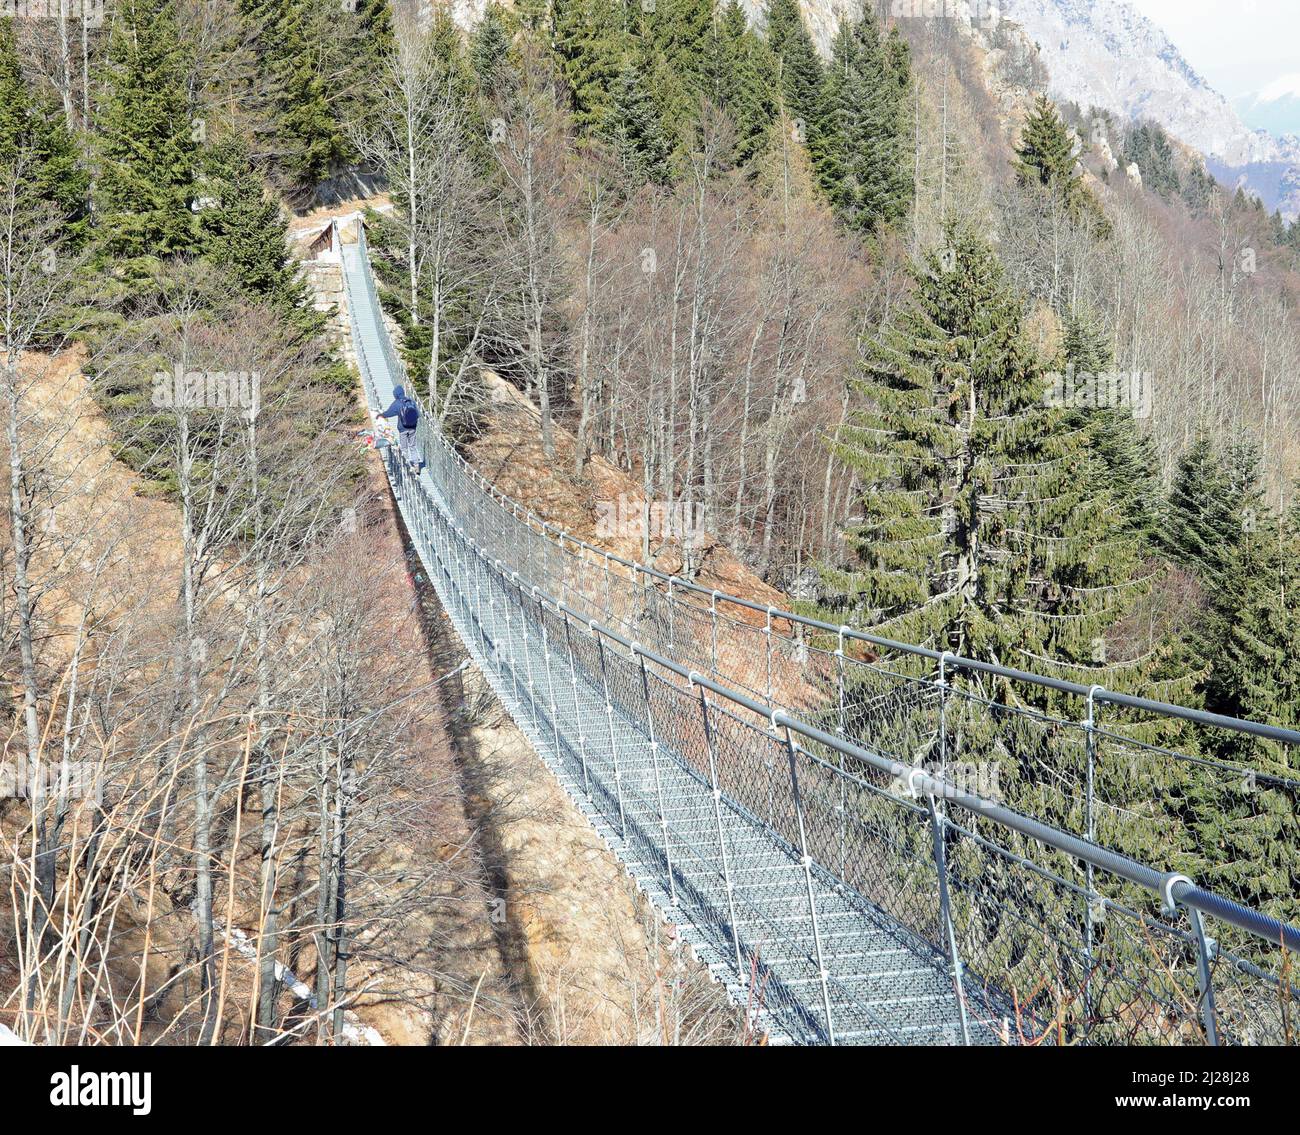 Long pont tibétain reliant les rives des crêtes de montagne en hiver et une personne la traversant Banque D'Images